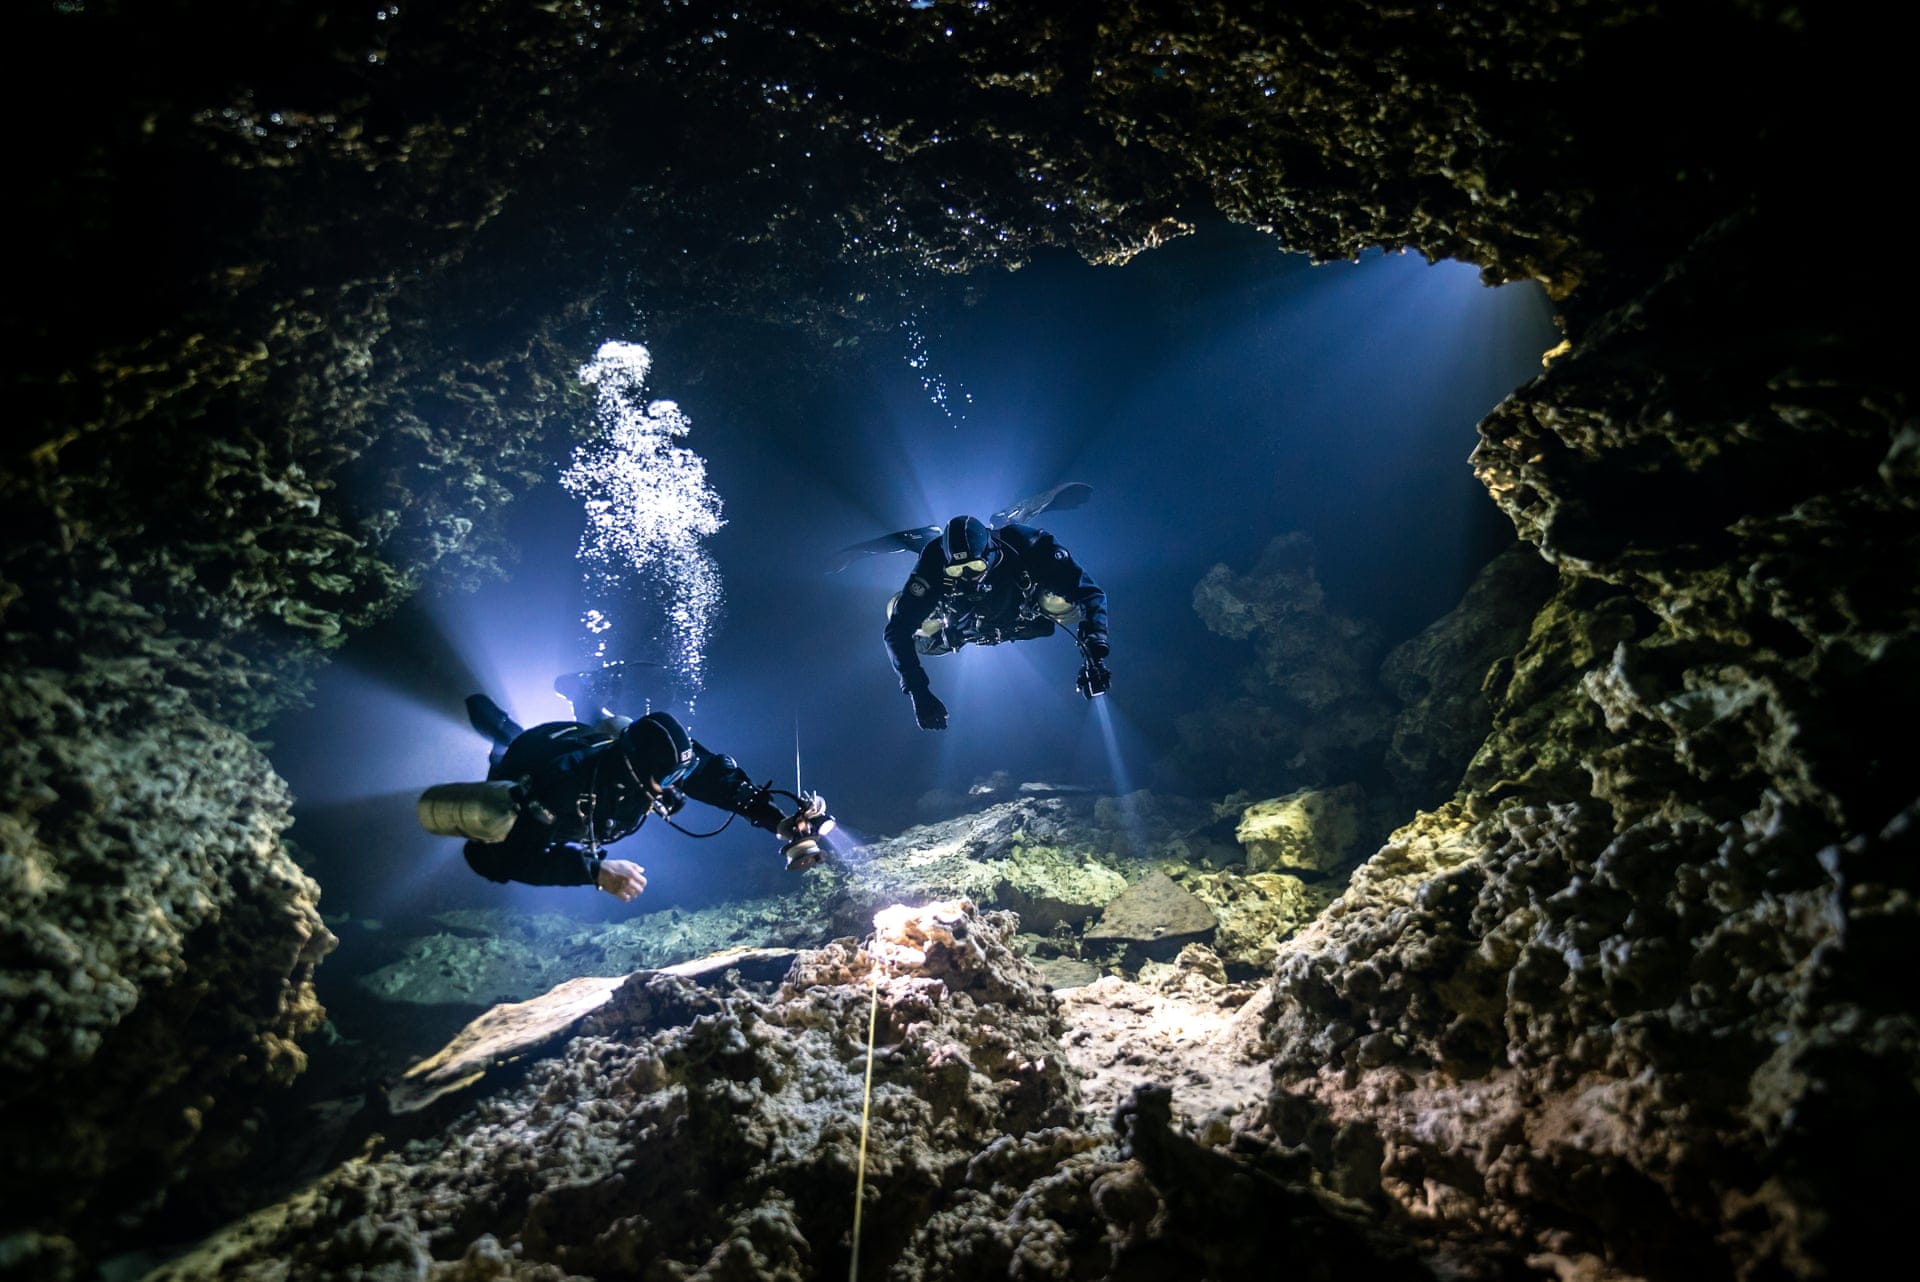 Plongeurs qui observent une grotte sous-marine obscure